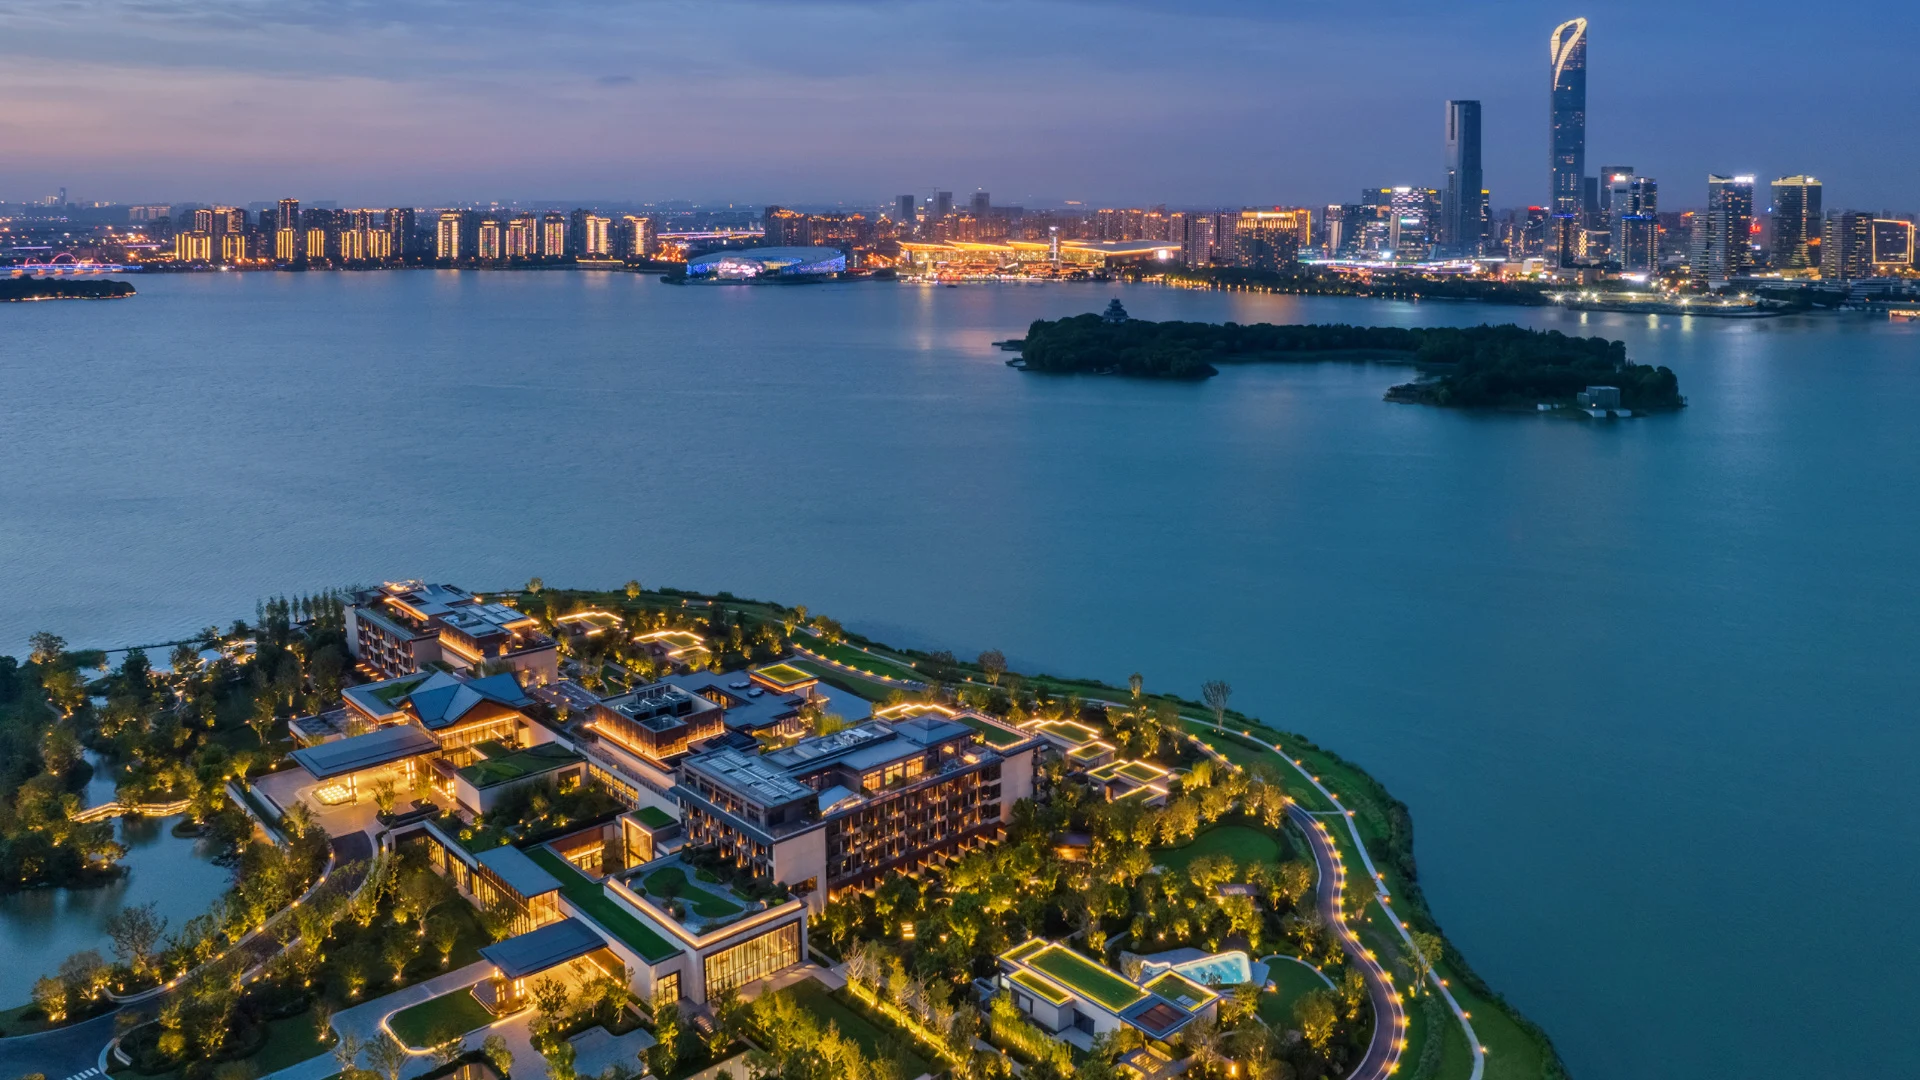 ¿Cómo es el nuevo hotel Four Seasons Suzhou en China?